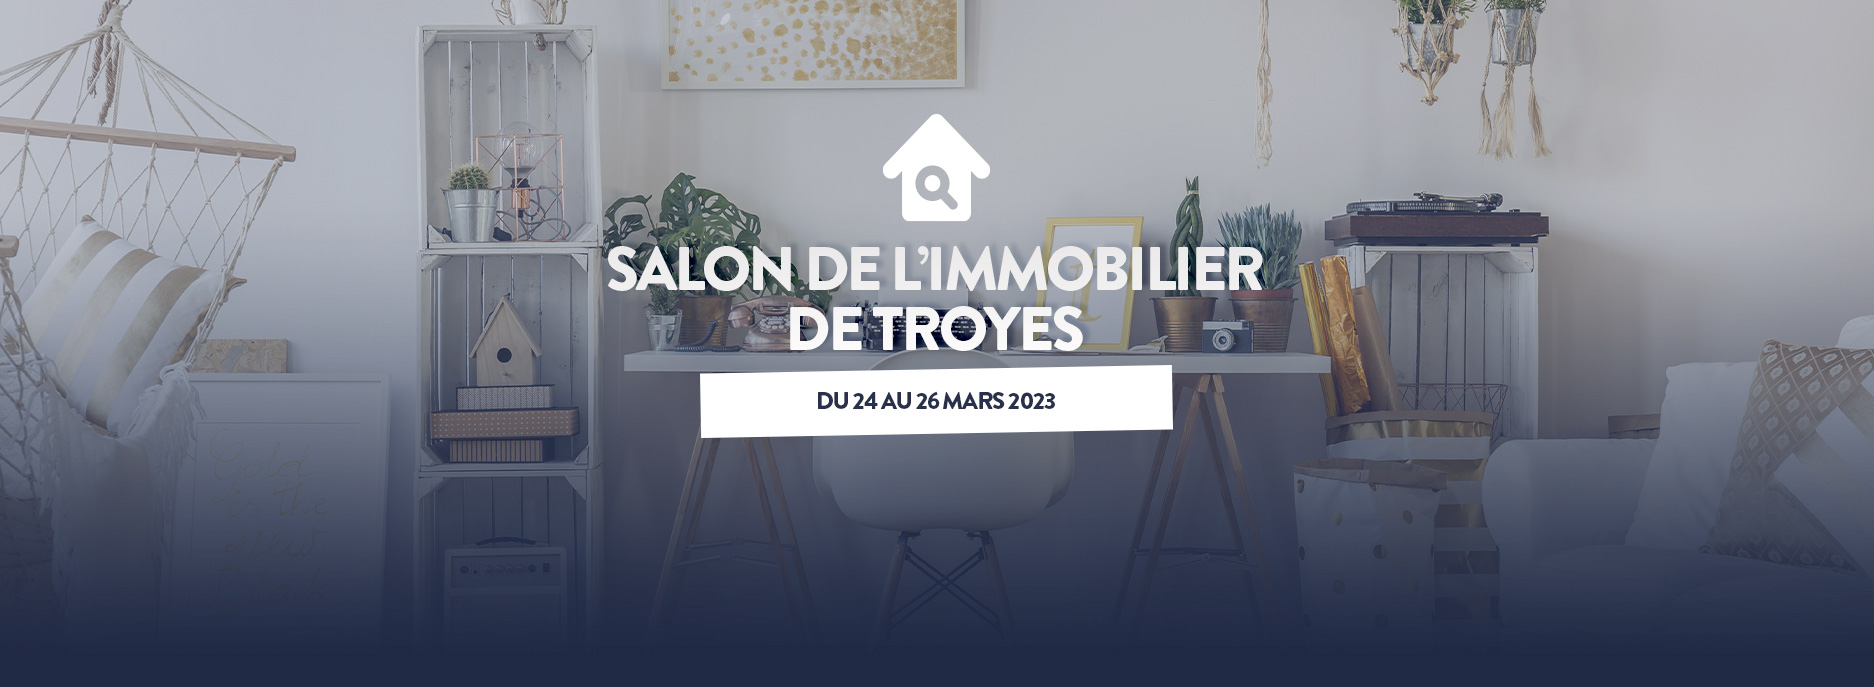 Salon de l'Immobilier de Troyes du 24 au 26 mars